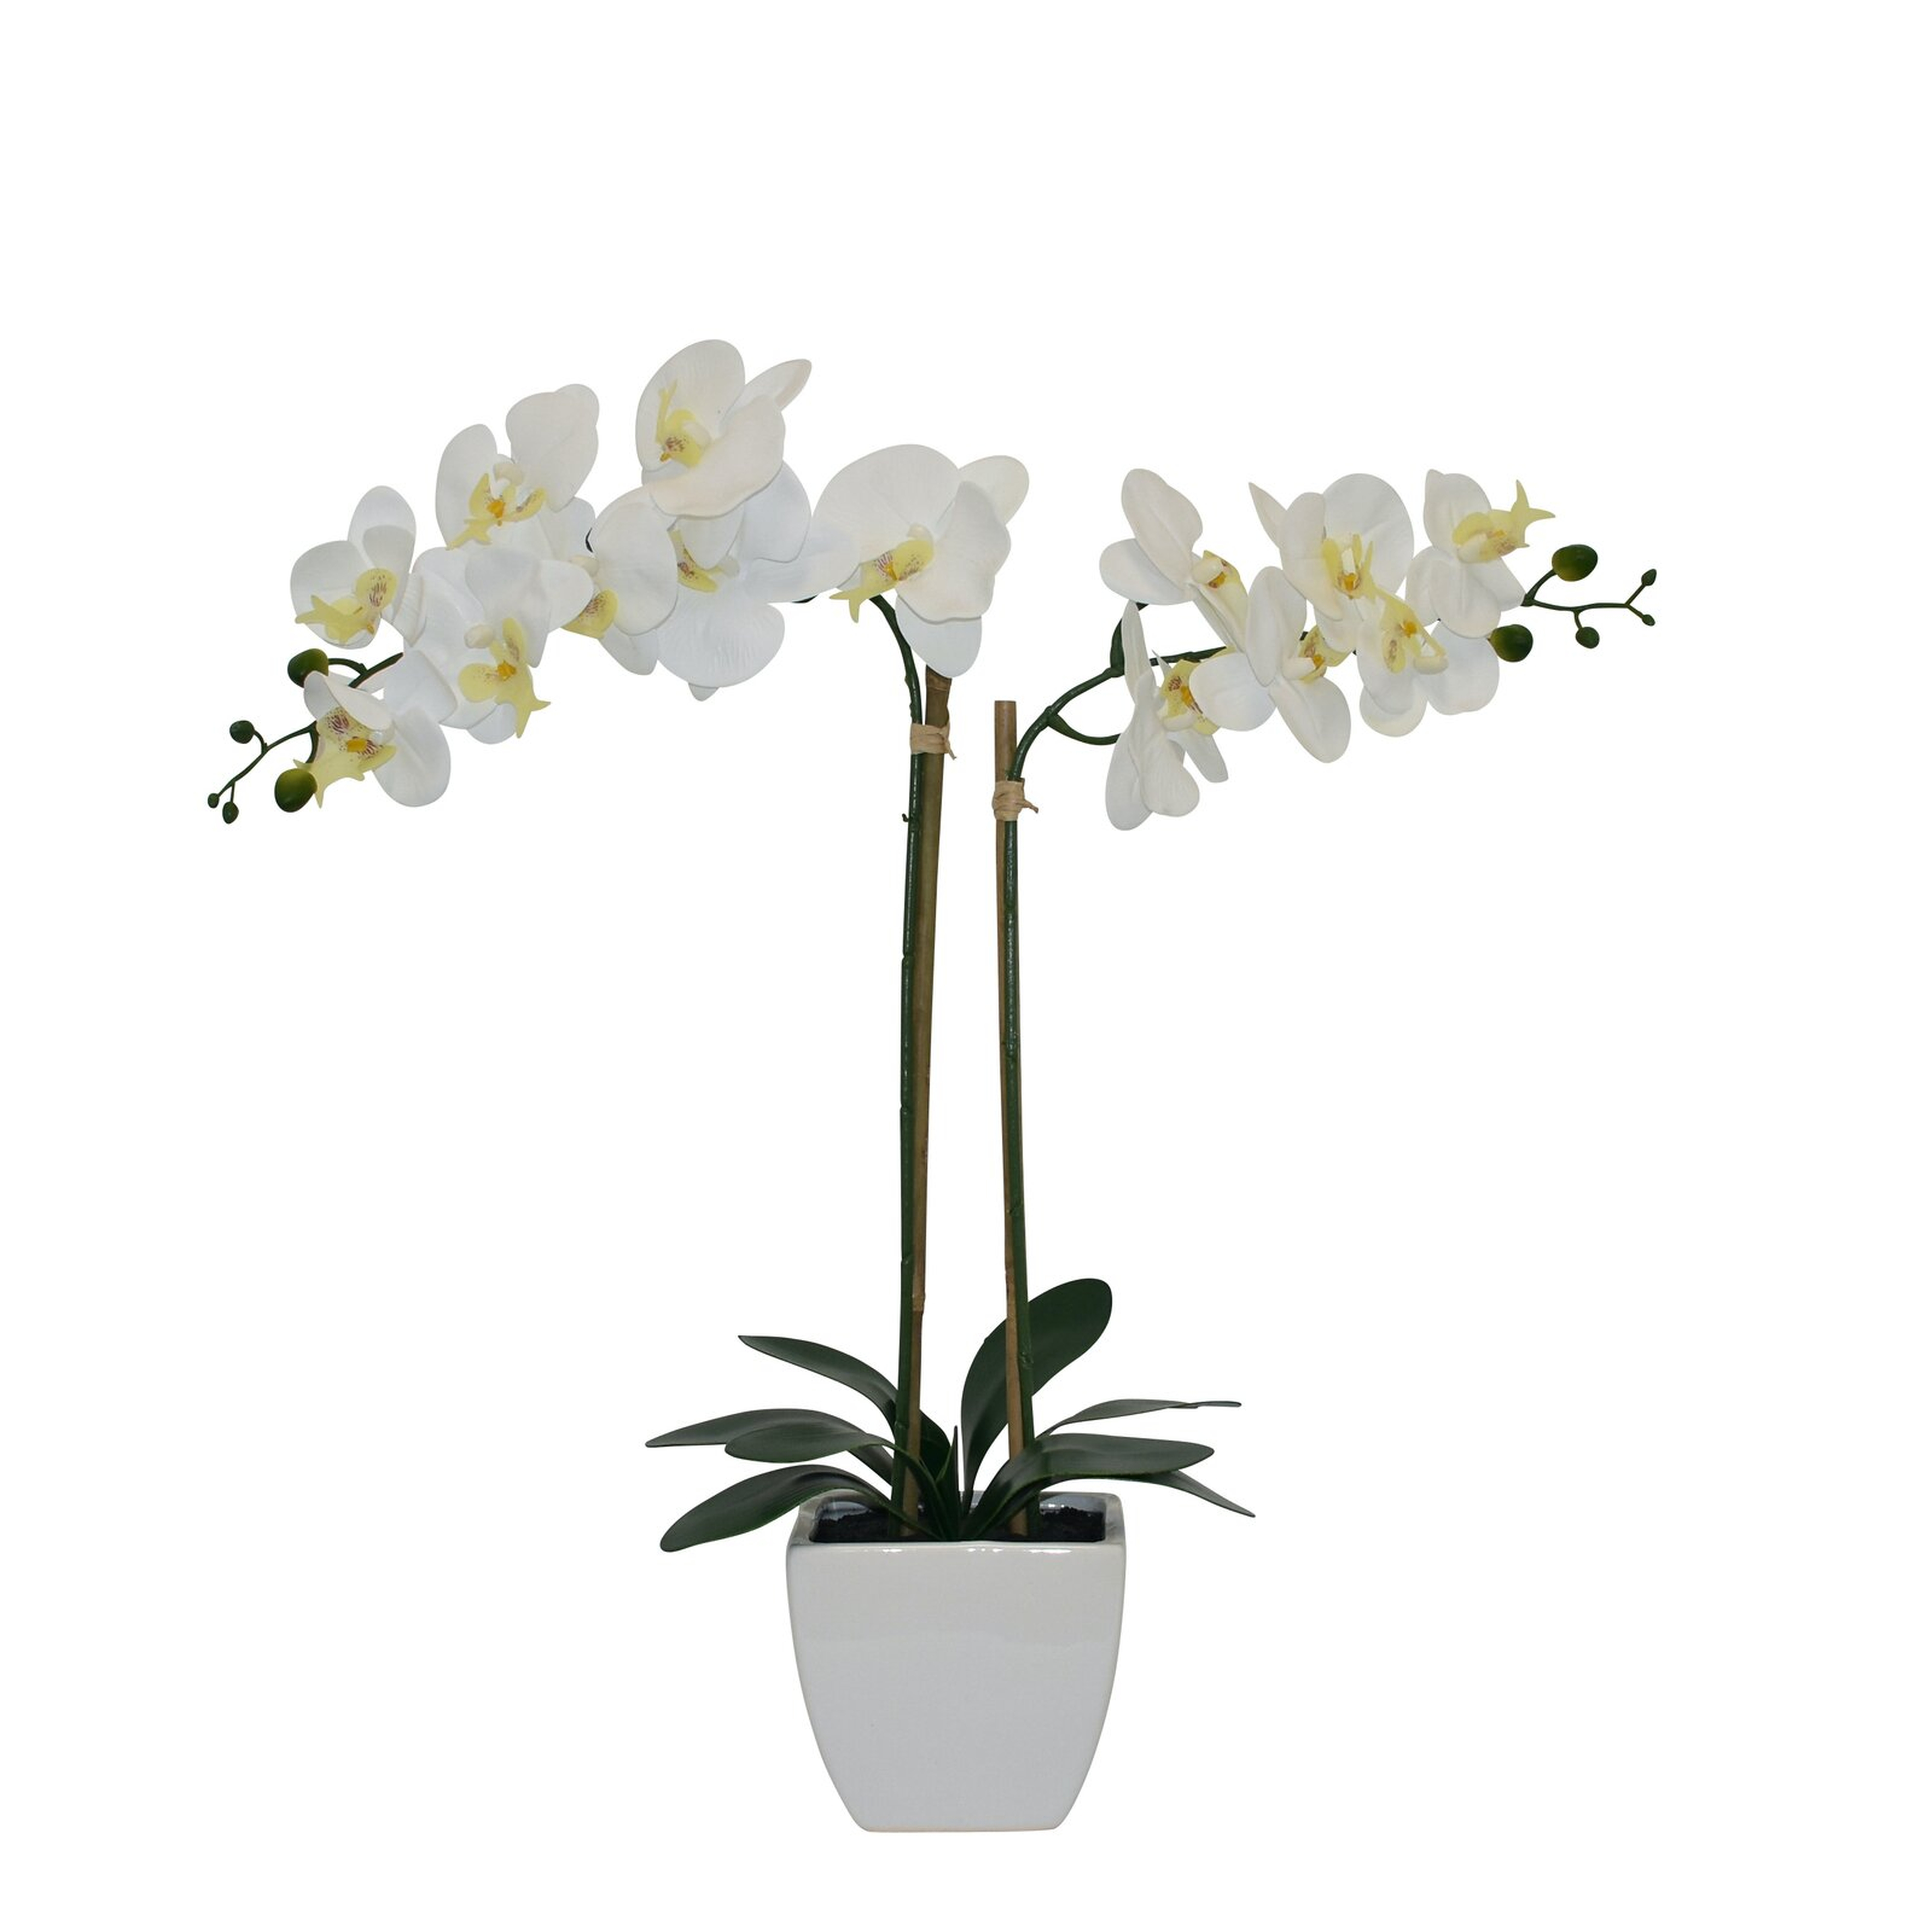 Orchids Floral Arrangements in Pot - Wayfair